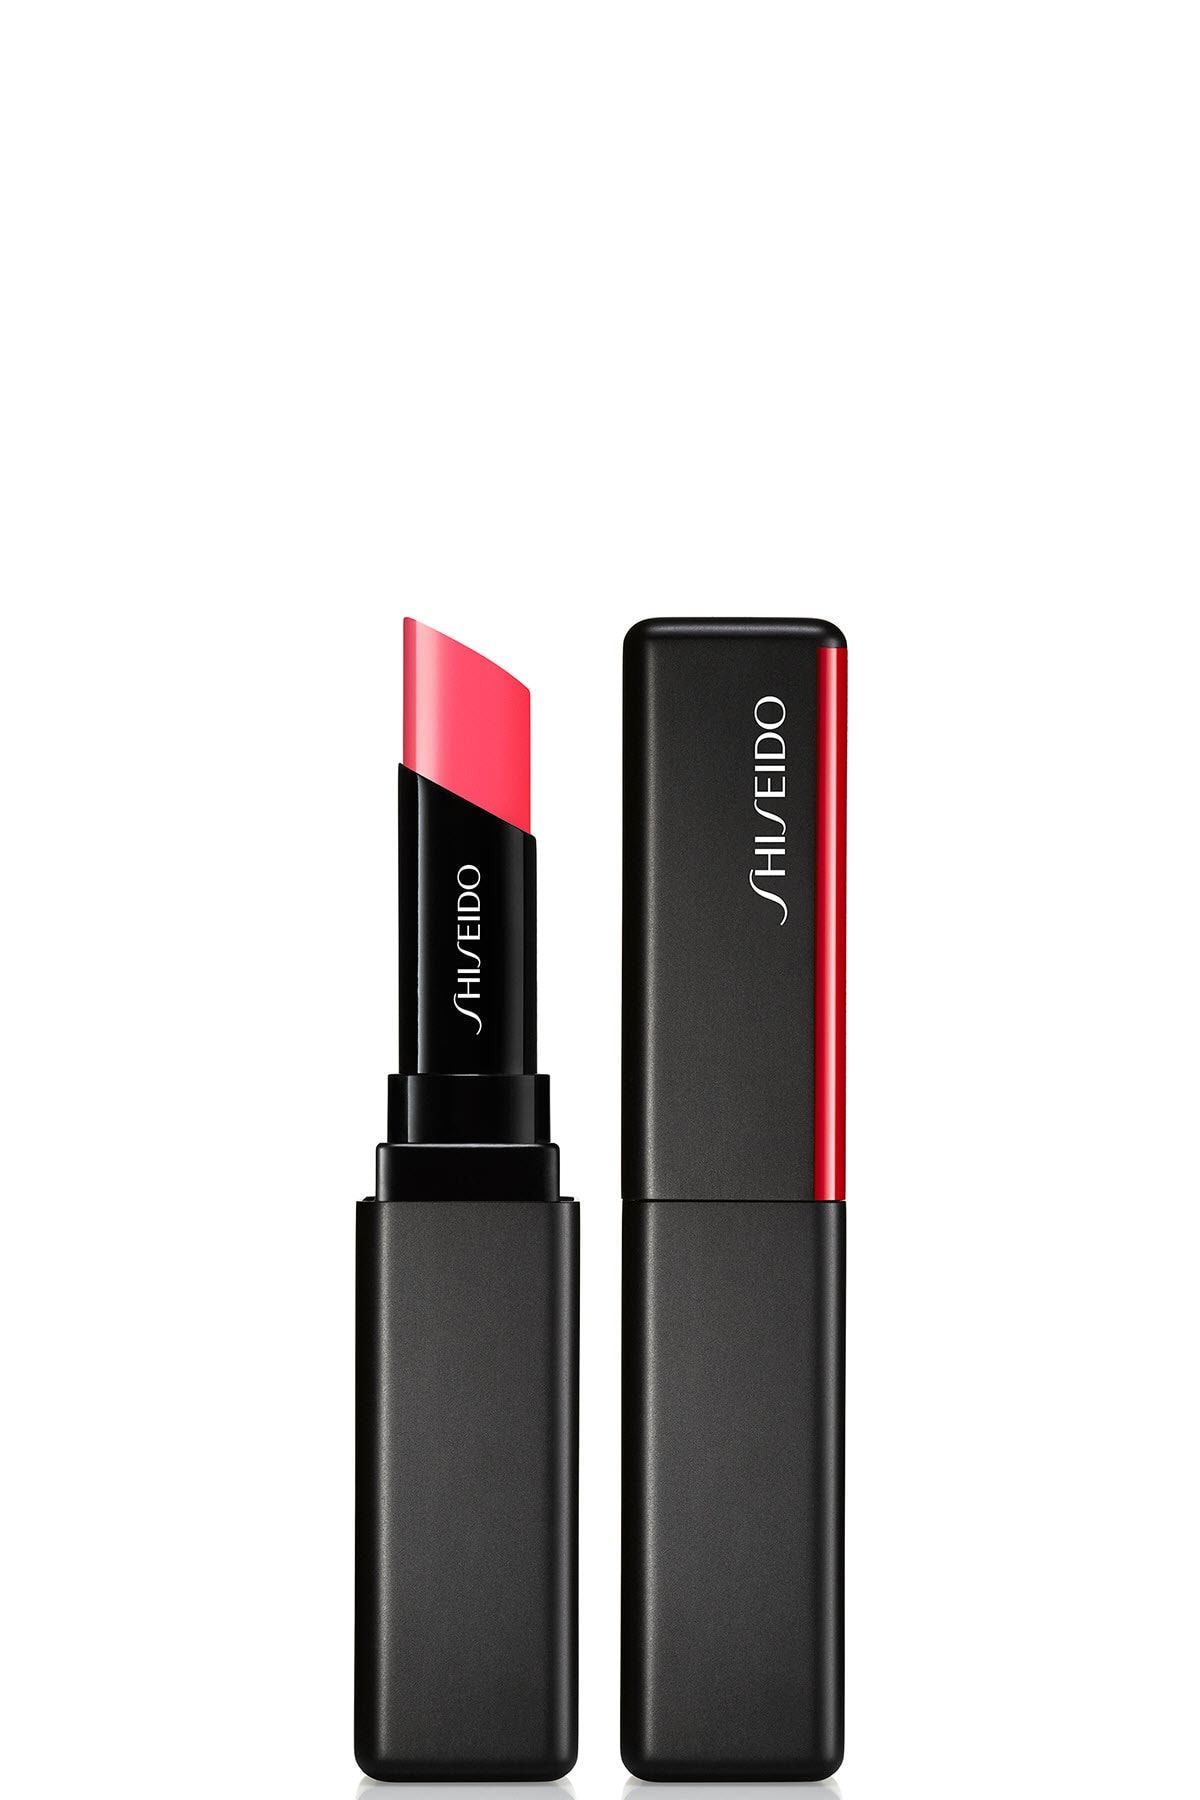 Shiseido Kalıcı Nemlendirici Ruj - SMK Visionairy Gel Lipstick 217 729238151949